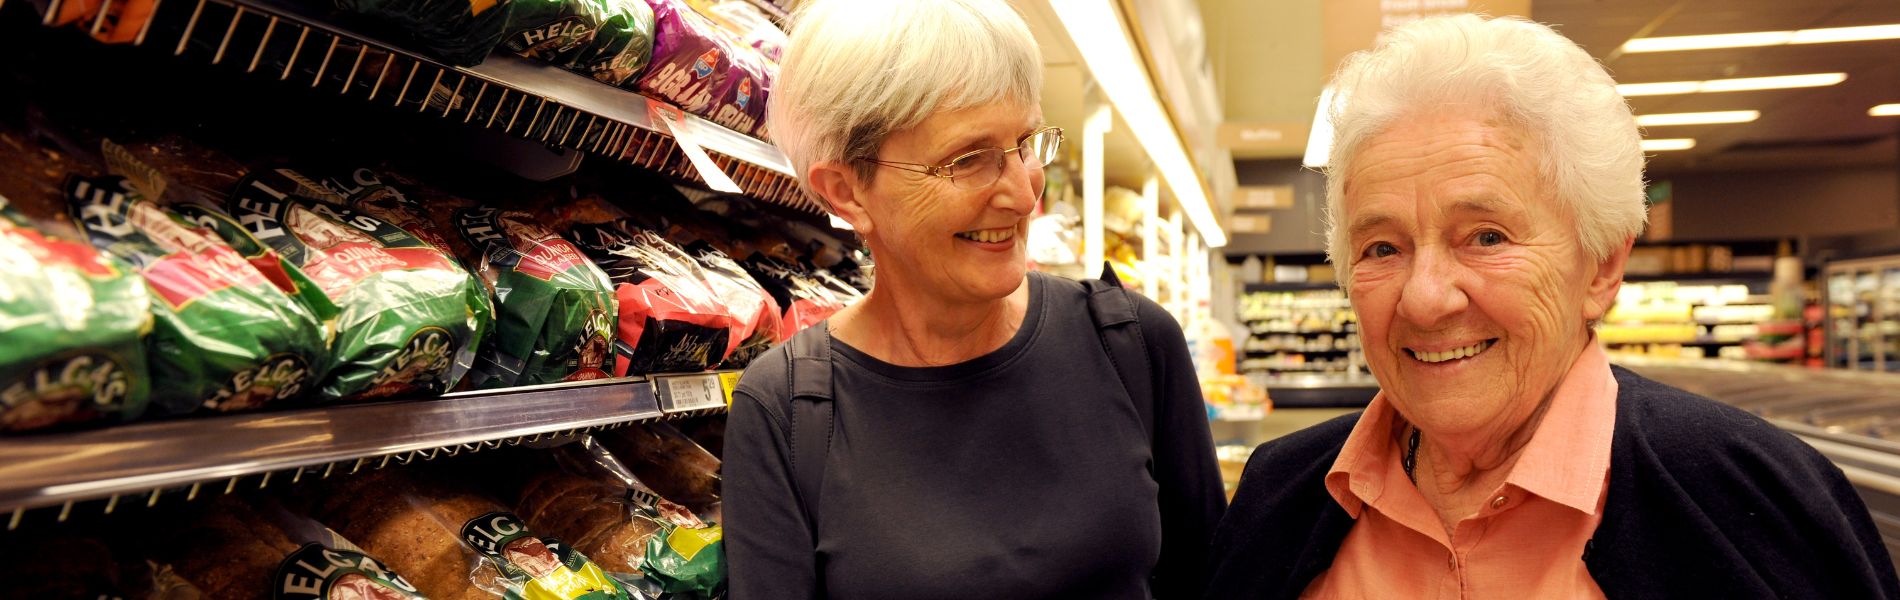 Senior ladies at supermarket